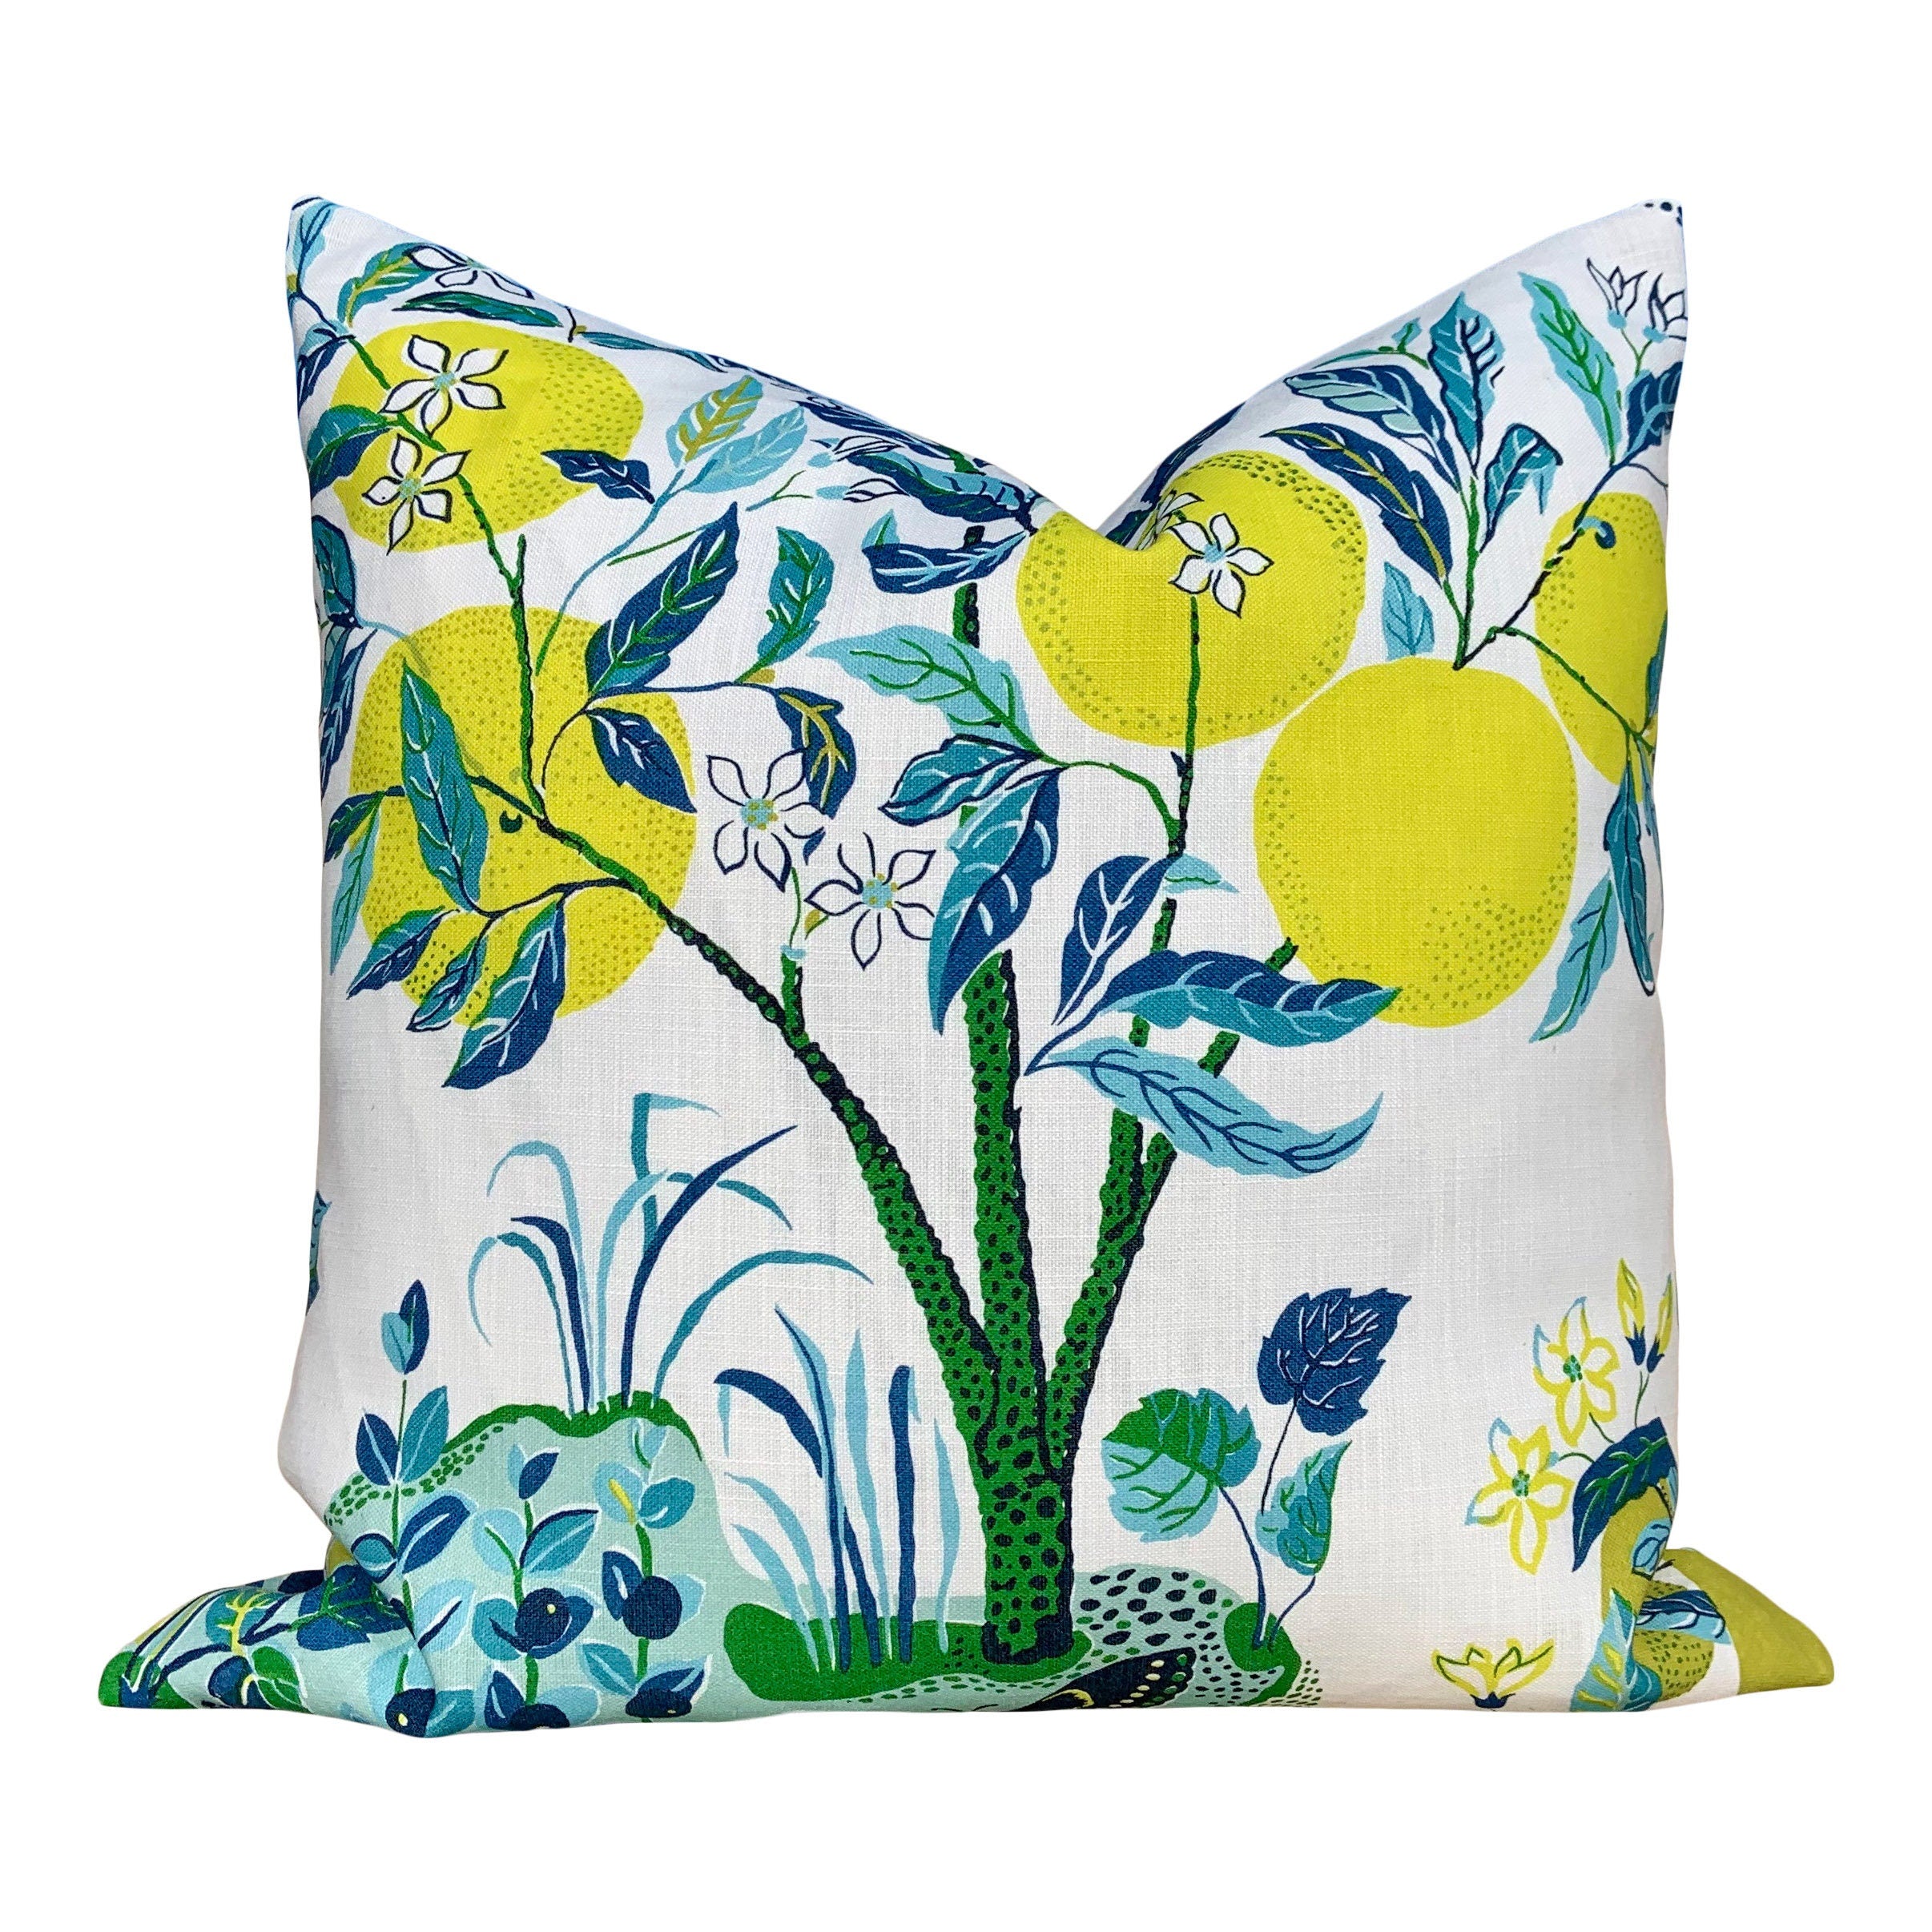 Outdoor Citrus Garden Pillow in Pool. Designer Outdoor Pillow, Josef Frank Accent Throw Pillow, Lemon Tree Pillow Cover, Schumacher Pillow